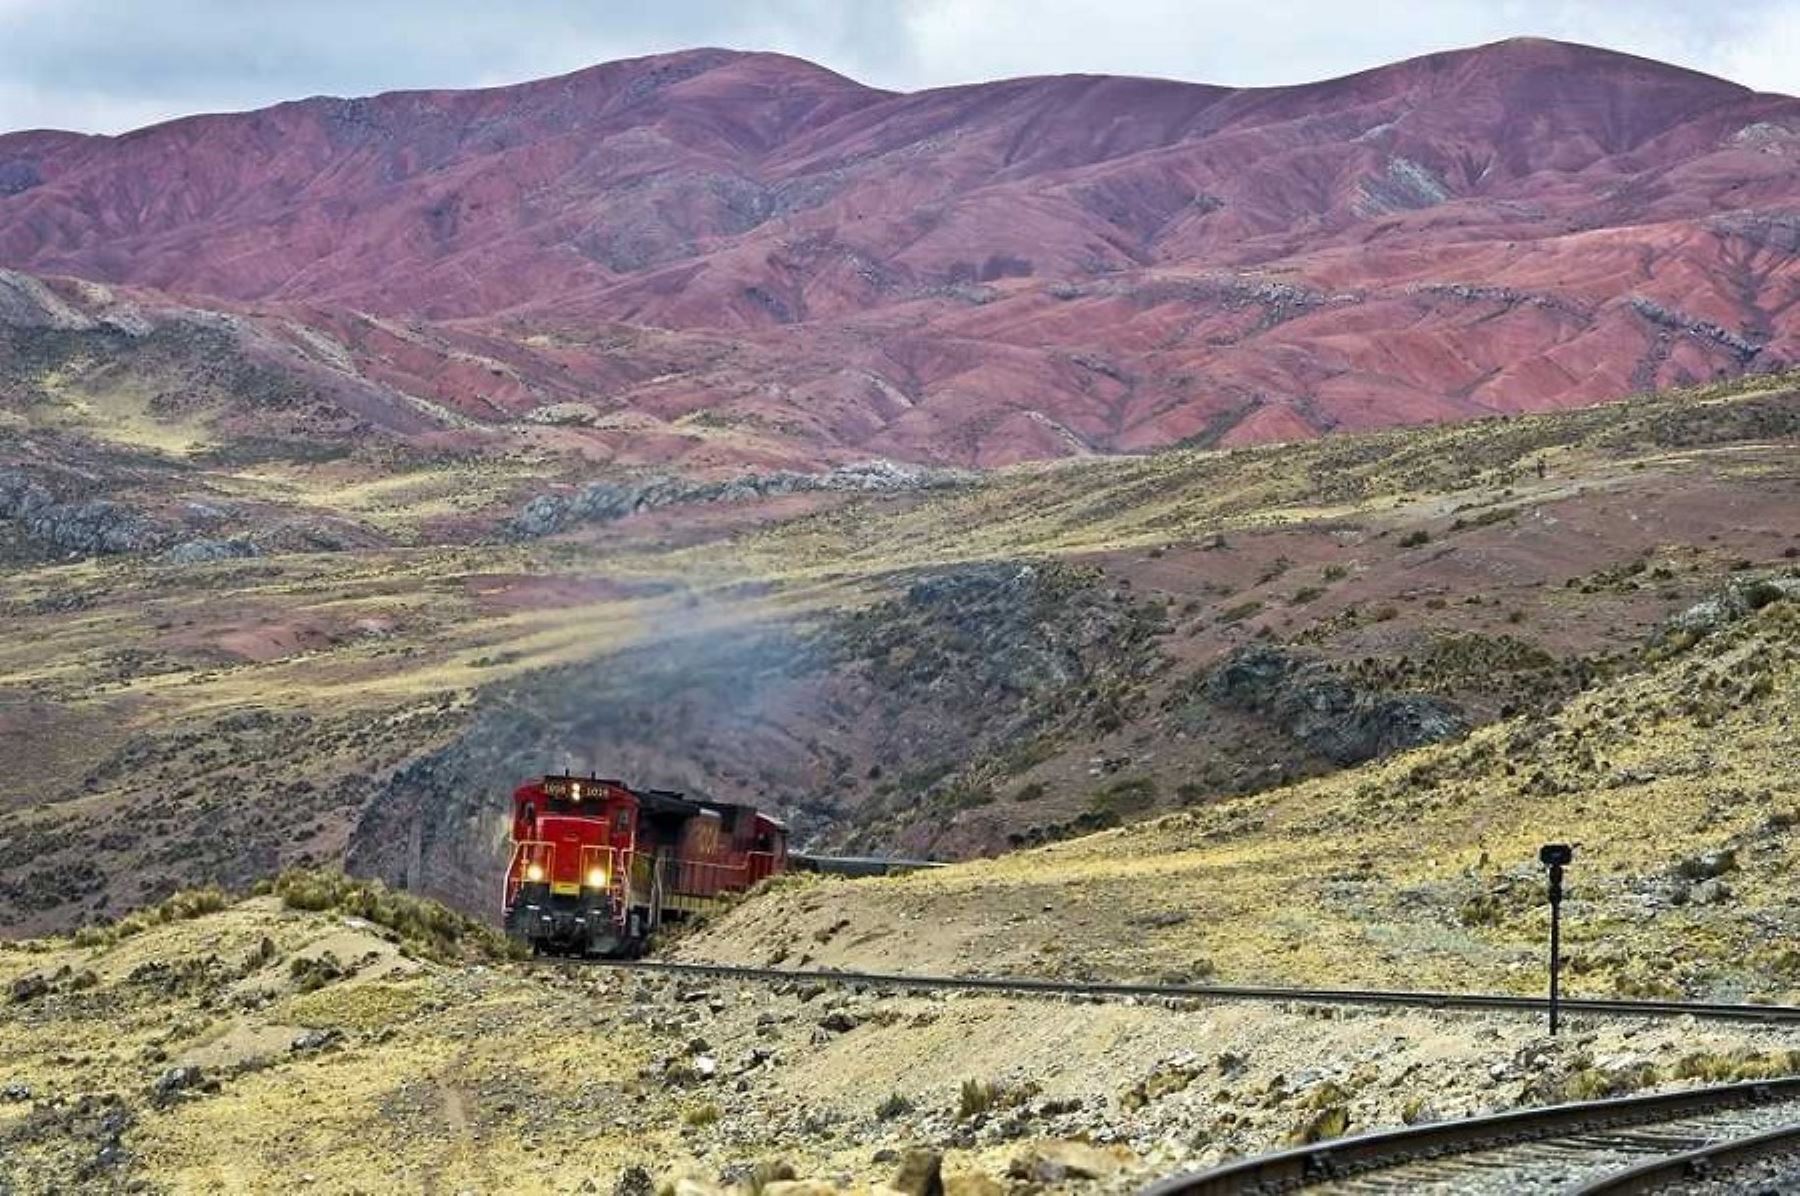 El Ministerio de Transportes y Comunicaciones (MTC) informó que la rehabilitación integral del ferrocarril Huancayo-Huancavelica, conocido como “Tren Macho”, garantizará el tránsito de personas y cargas a través de un servicio ferroviario seguro en la zona de influencia, beneficiando a más de tres millones de personas.